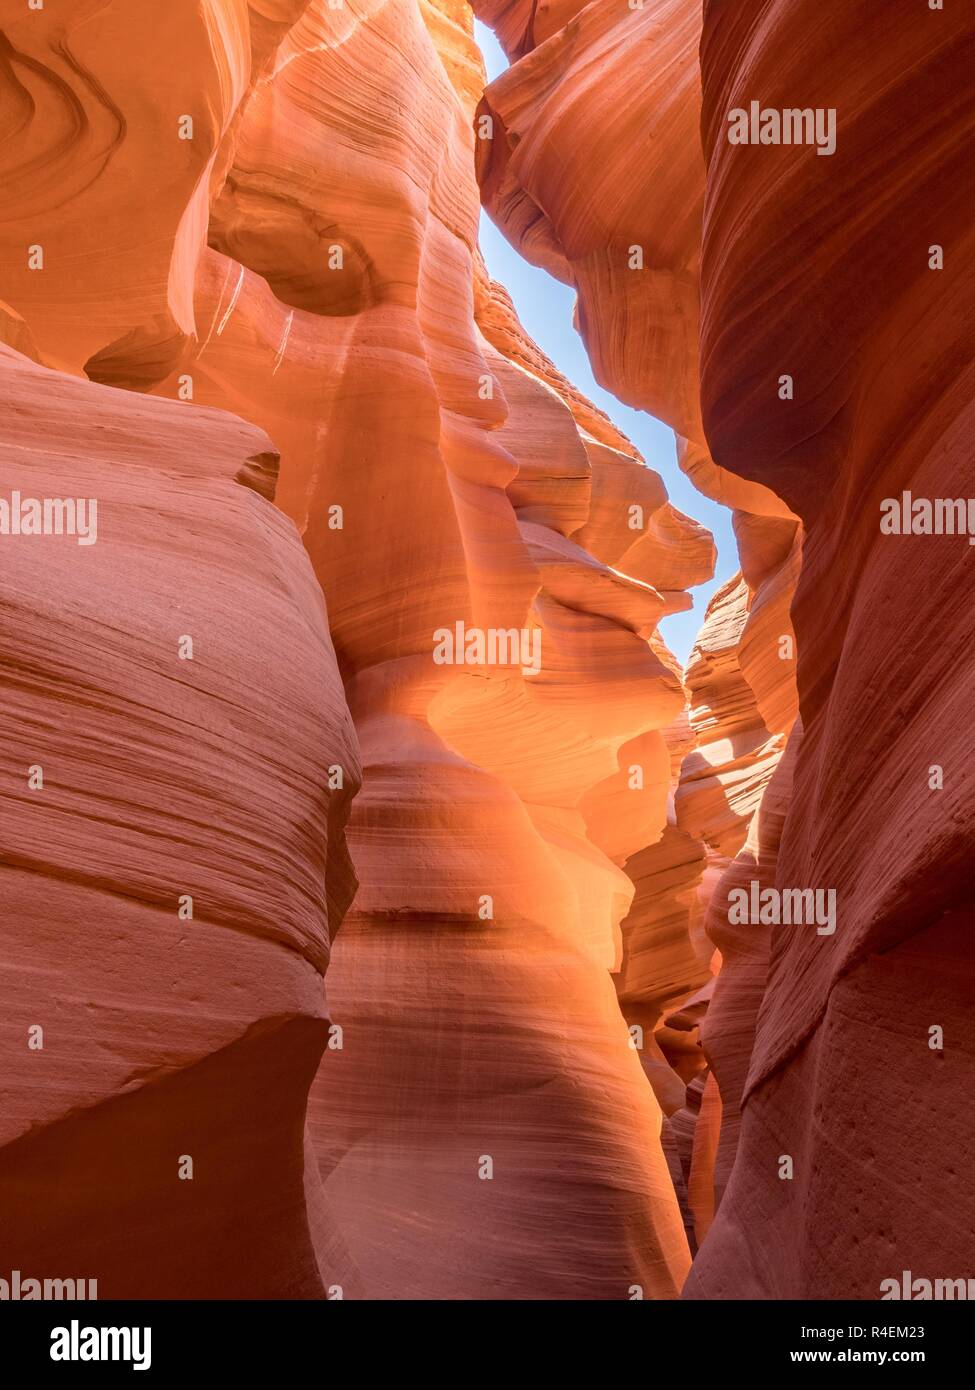 Antelope Canyon, Arizona, United States Stock Photo